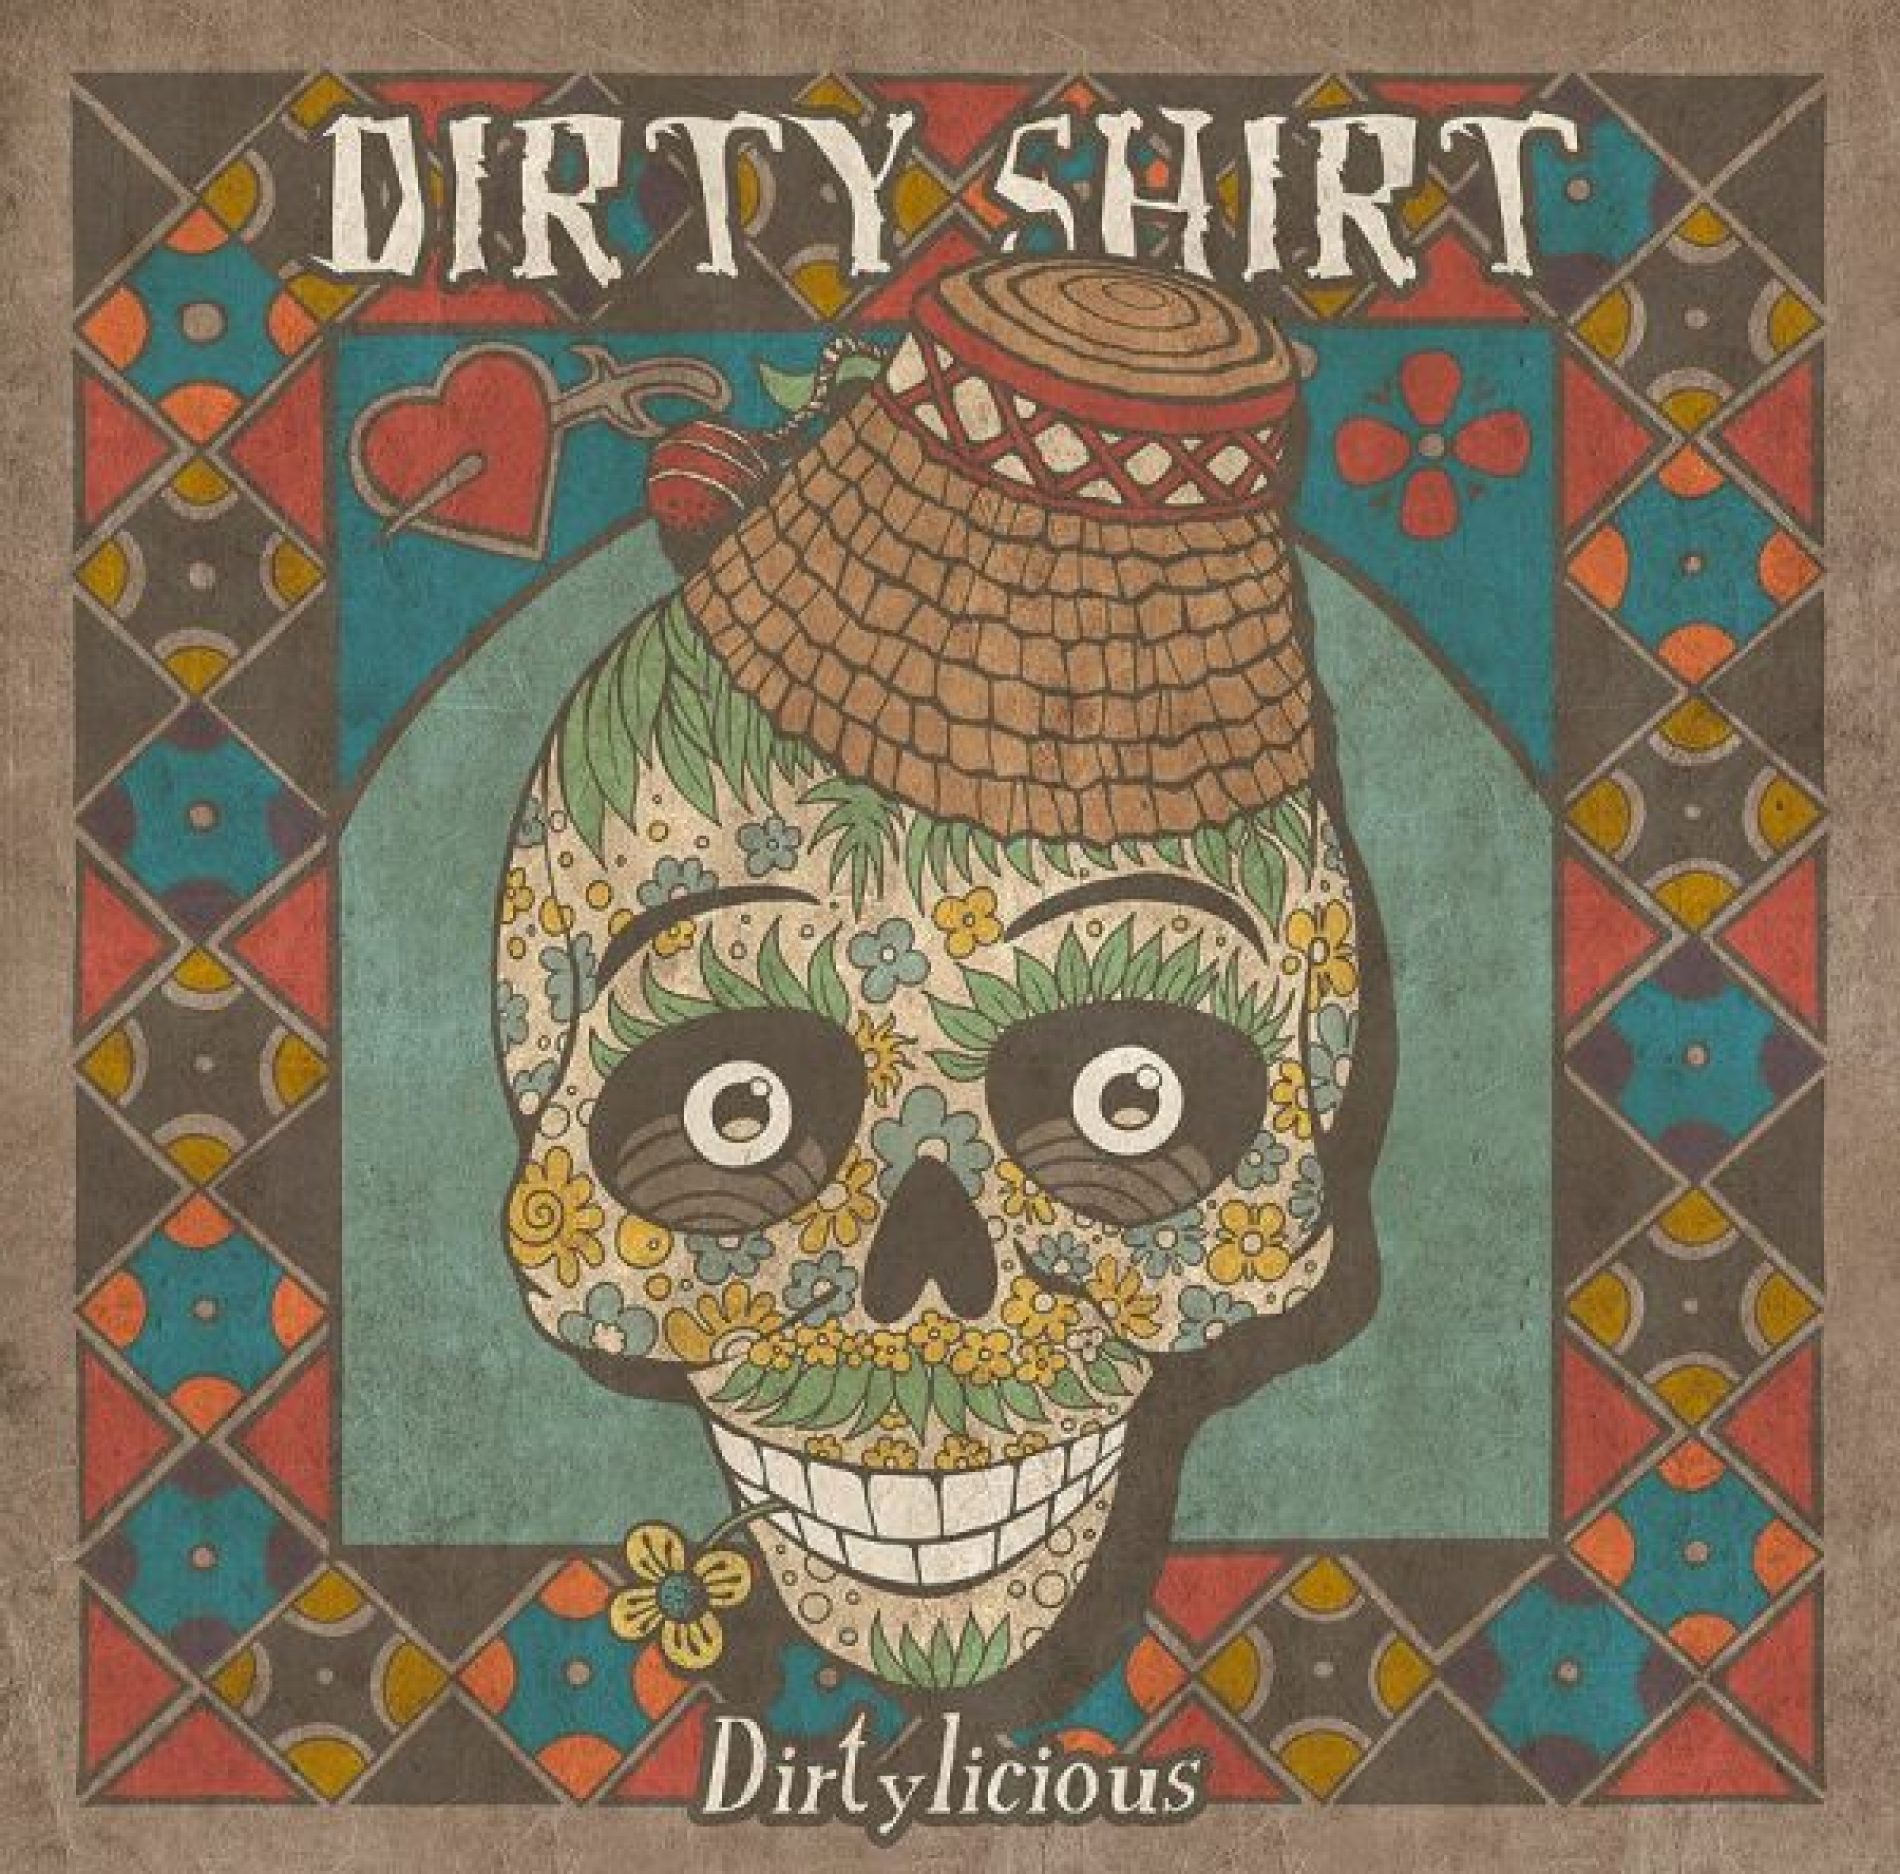 Dirty Shirt anunta primele date ale turneului din 2015